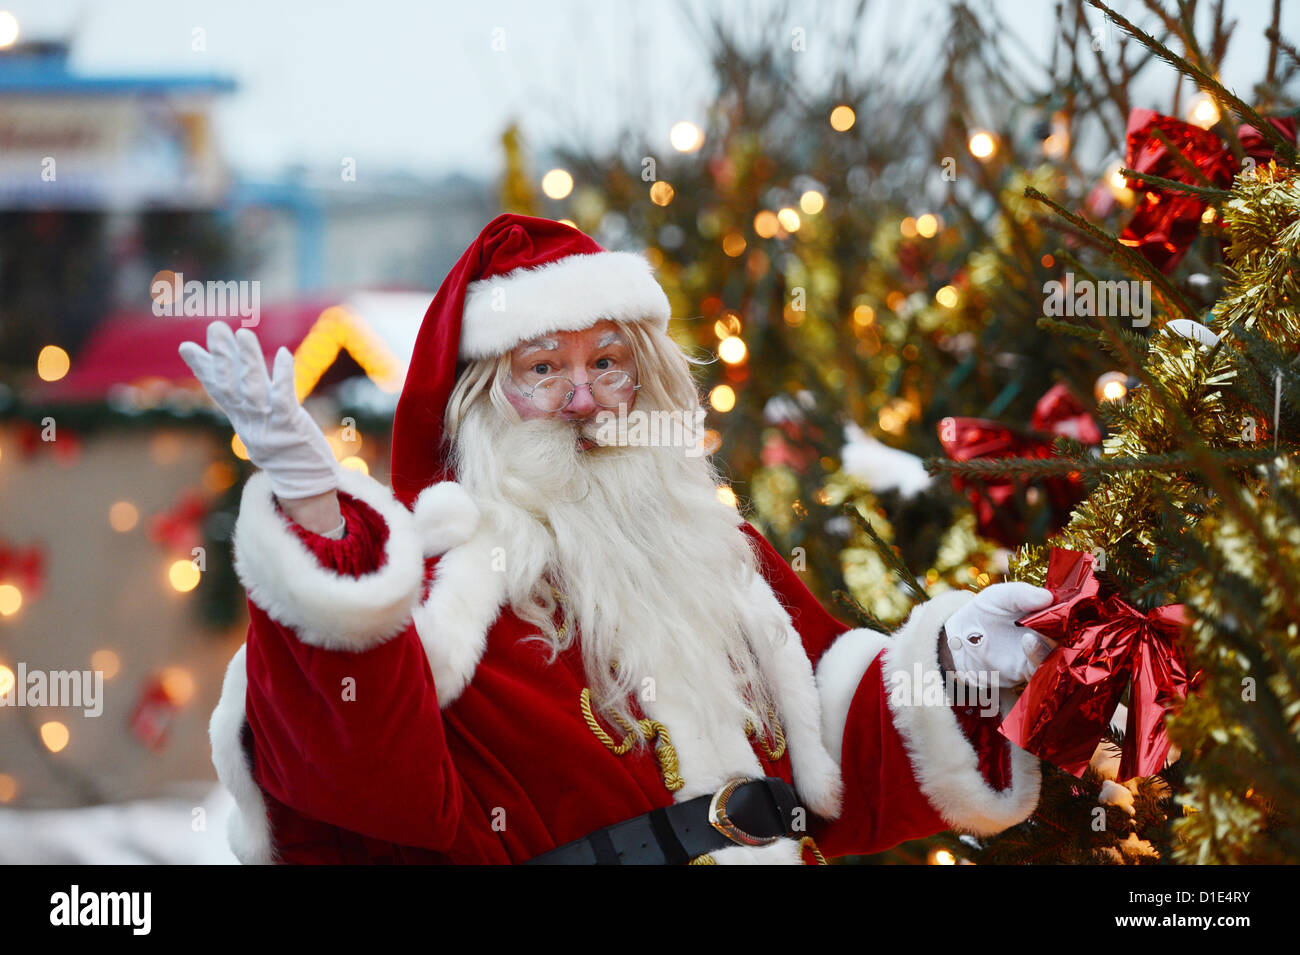 Ein Mann gekleidet wie Santa Claus Posen auf dem nostalgischen Weihnachtsmarkt am Opernpalais in Berlin, Deutschland, 12. Dezember 2012. Der nostalgische Weihnachtsmarkt gehört zu den beliebtesten Weihnachtsmärkte in Deutschland, laut einer aktuellen Umfrage. Foto: Jens Kalaene Stockfoto